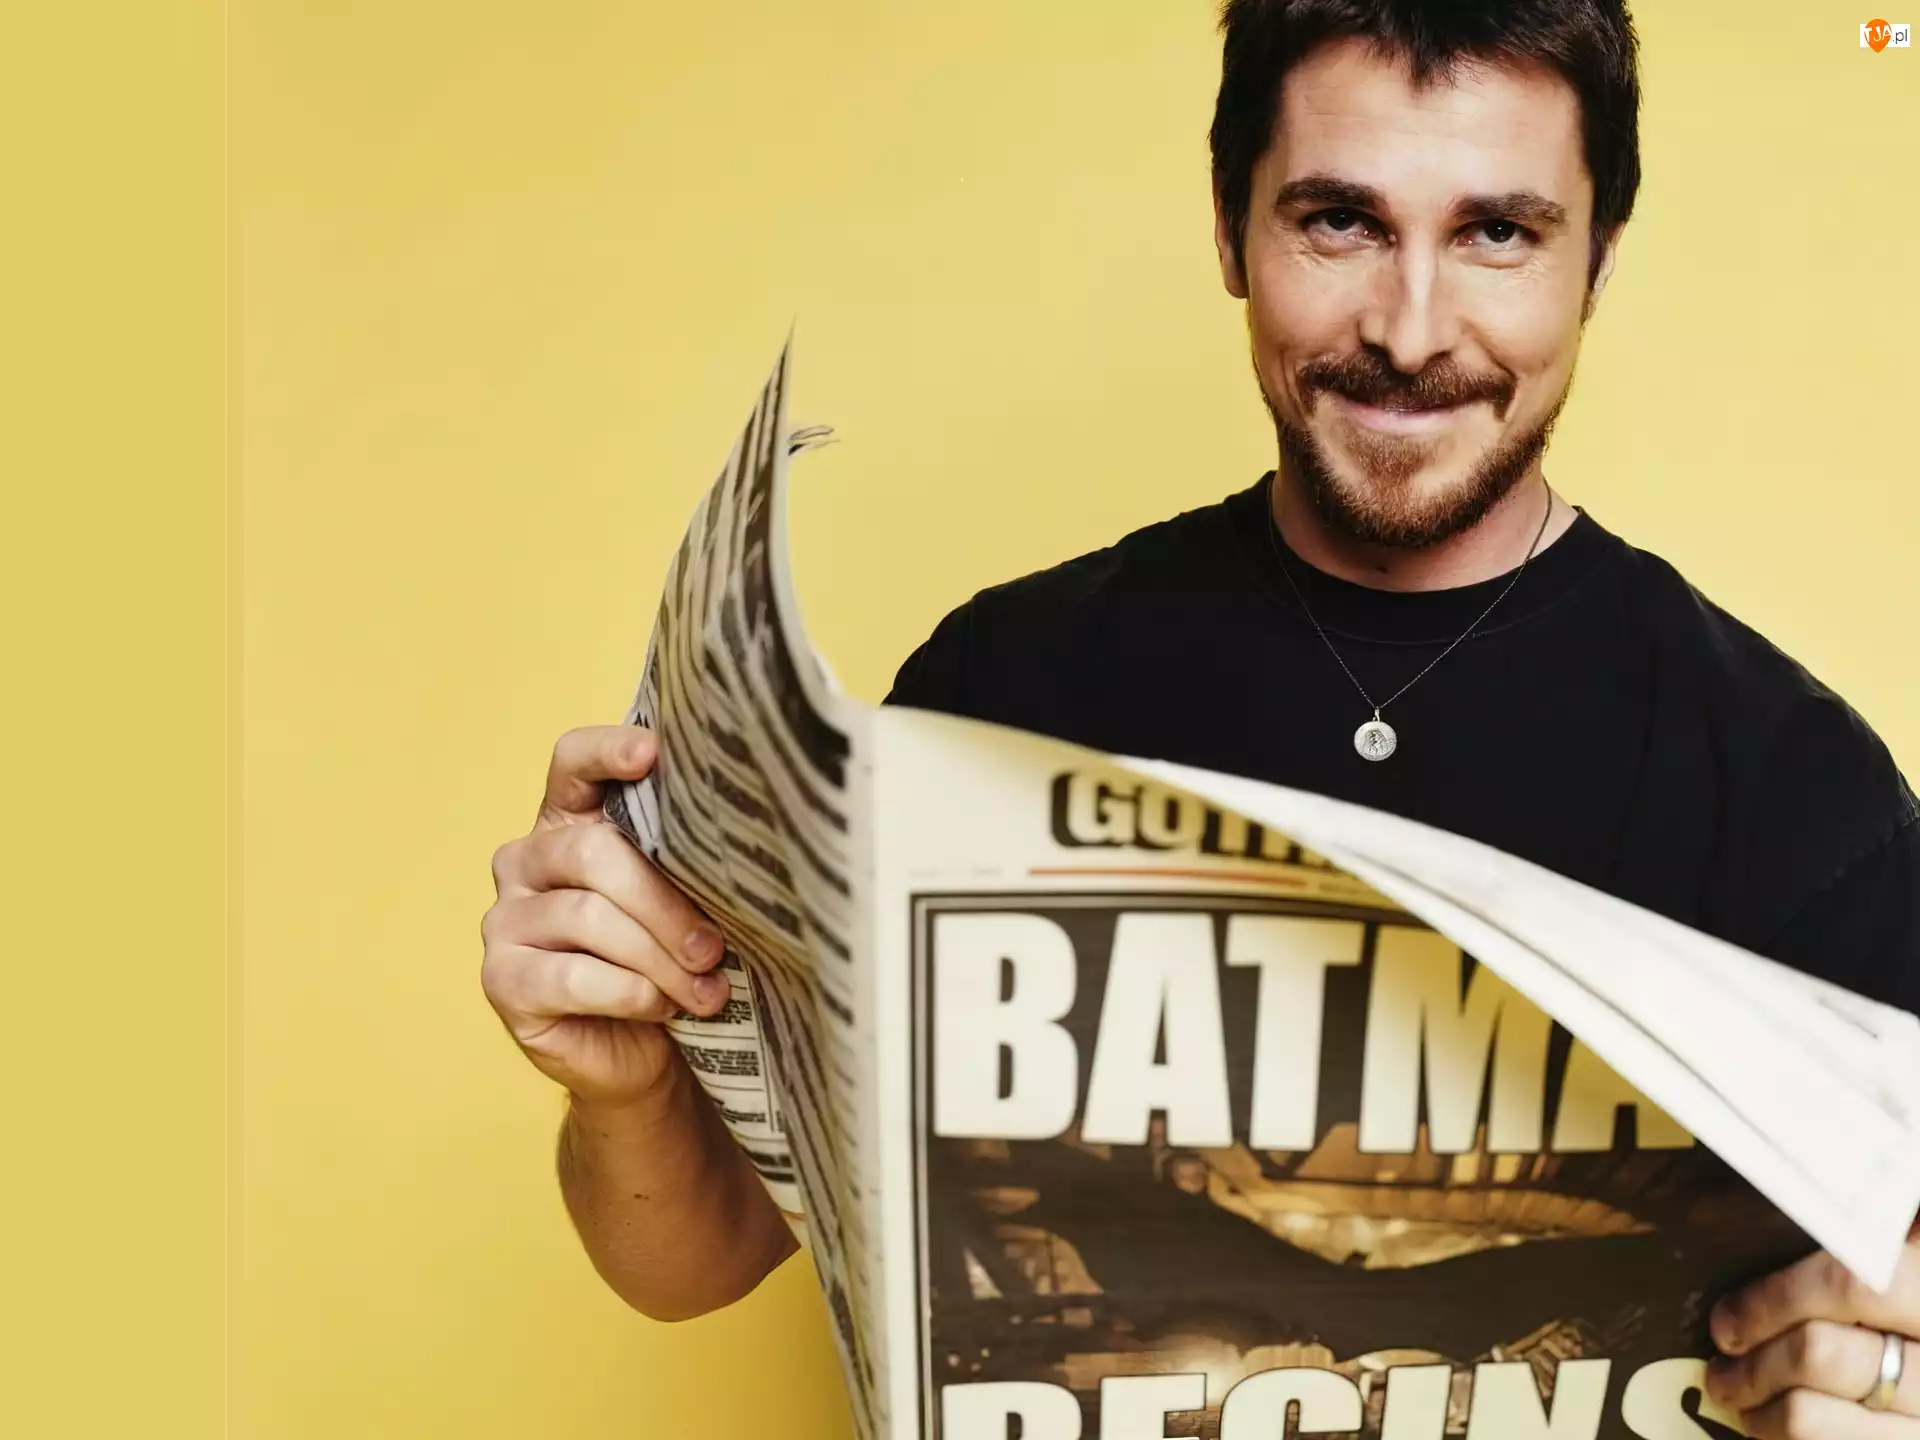 gazeta, Christian Bale